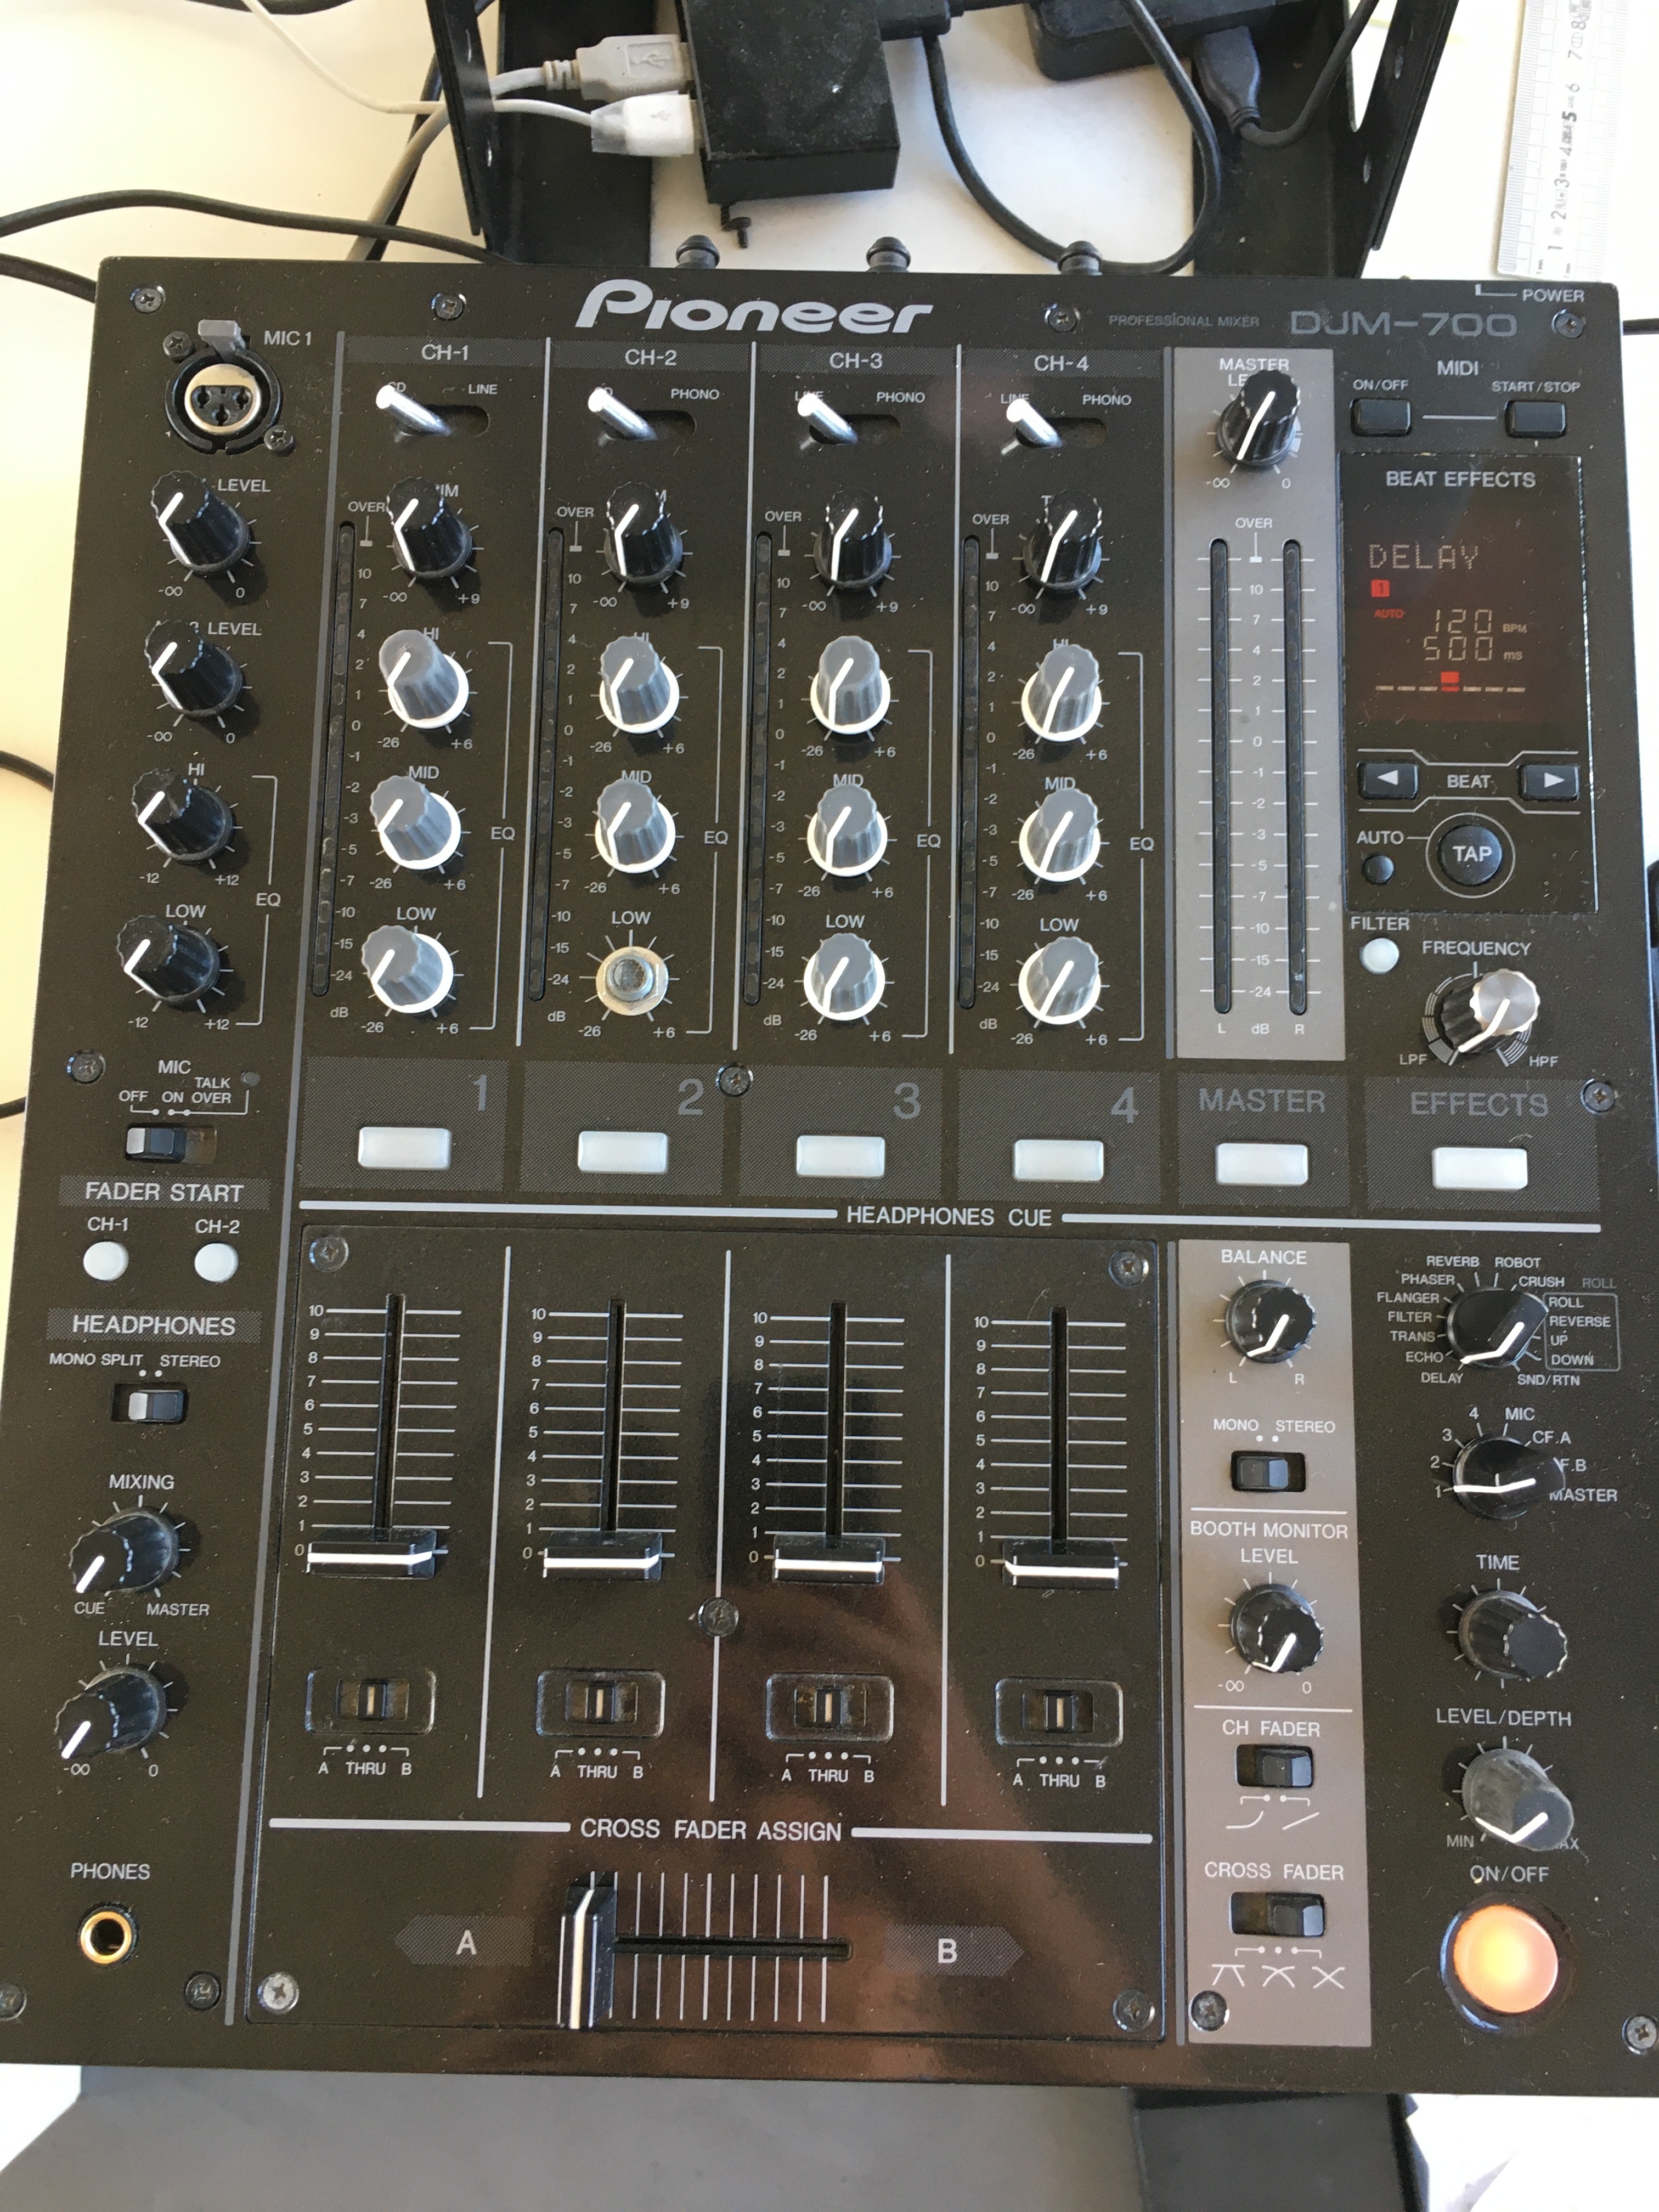 DJM-700-K - Pioneer DJM-700-K - Audiofanzine